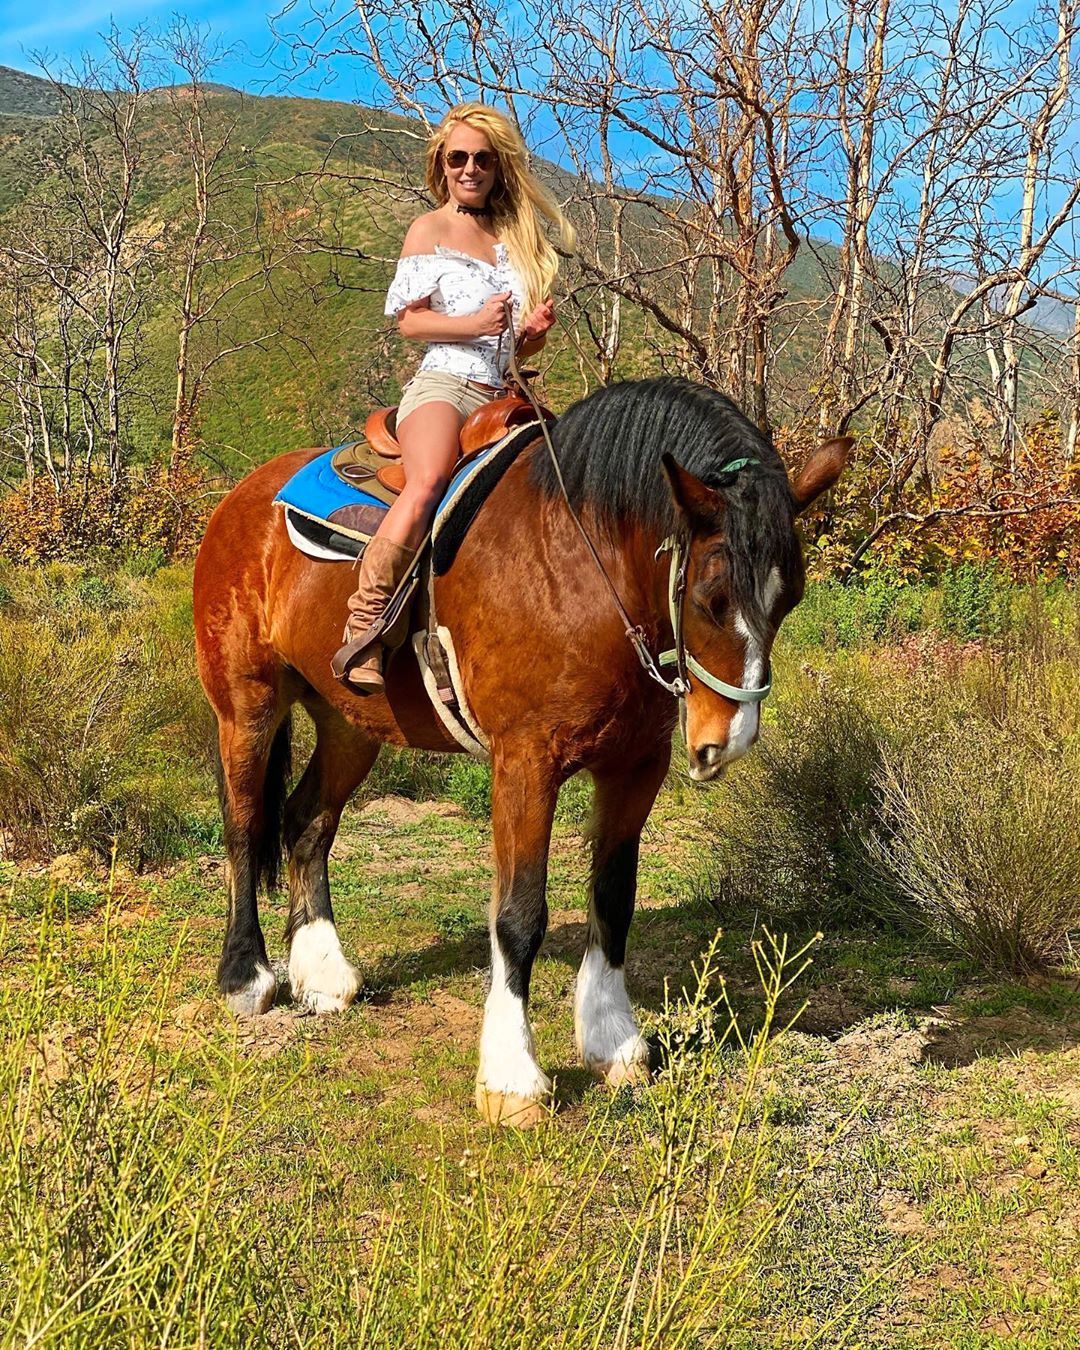 Britney Spears poses on horseback